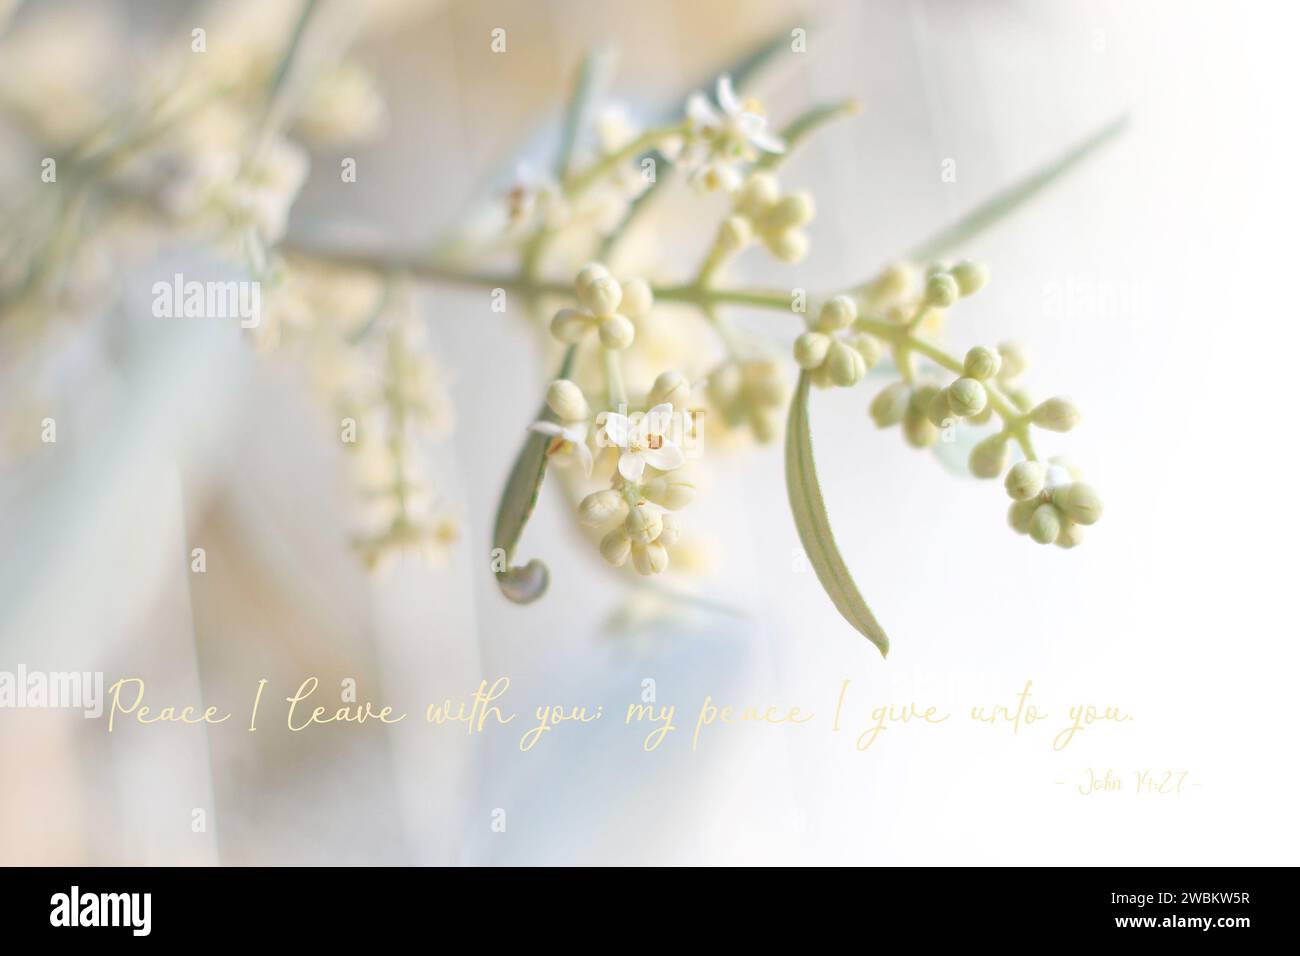 Gros plan d'une branche d'olivier en fleurs avec des bourgeons et des fleurs, et une citation biblique sur la paix. Banque D'Images